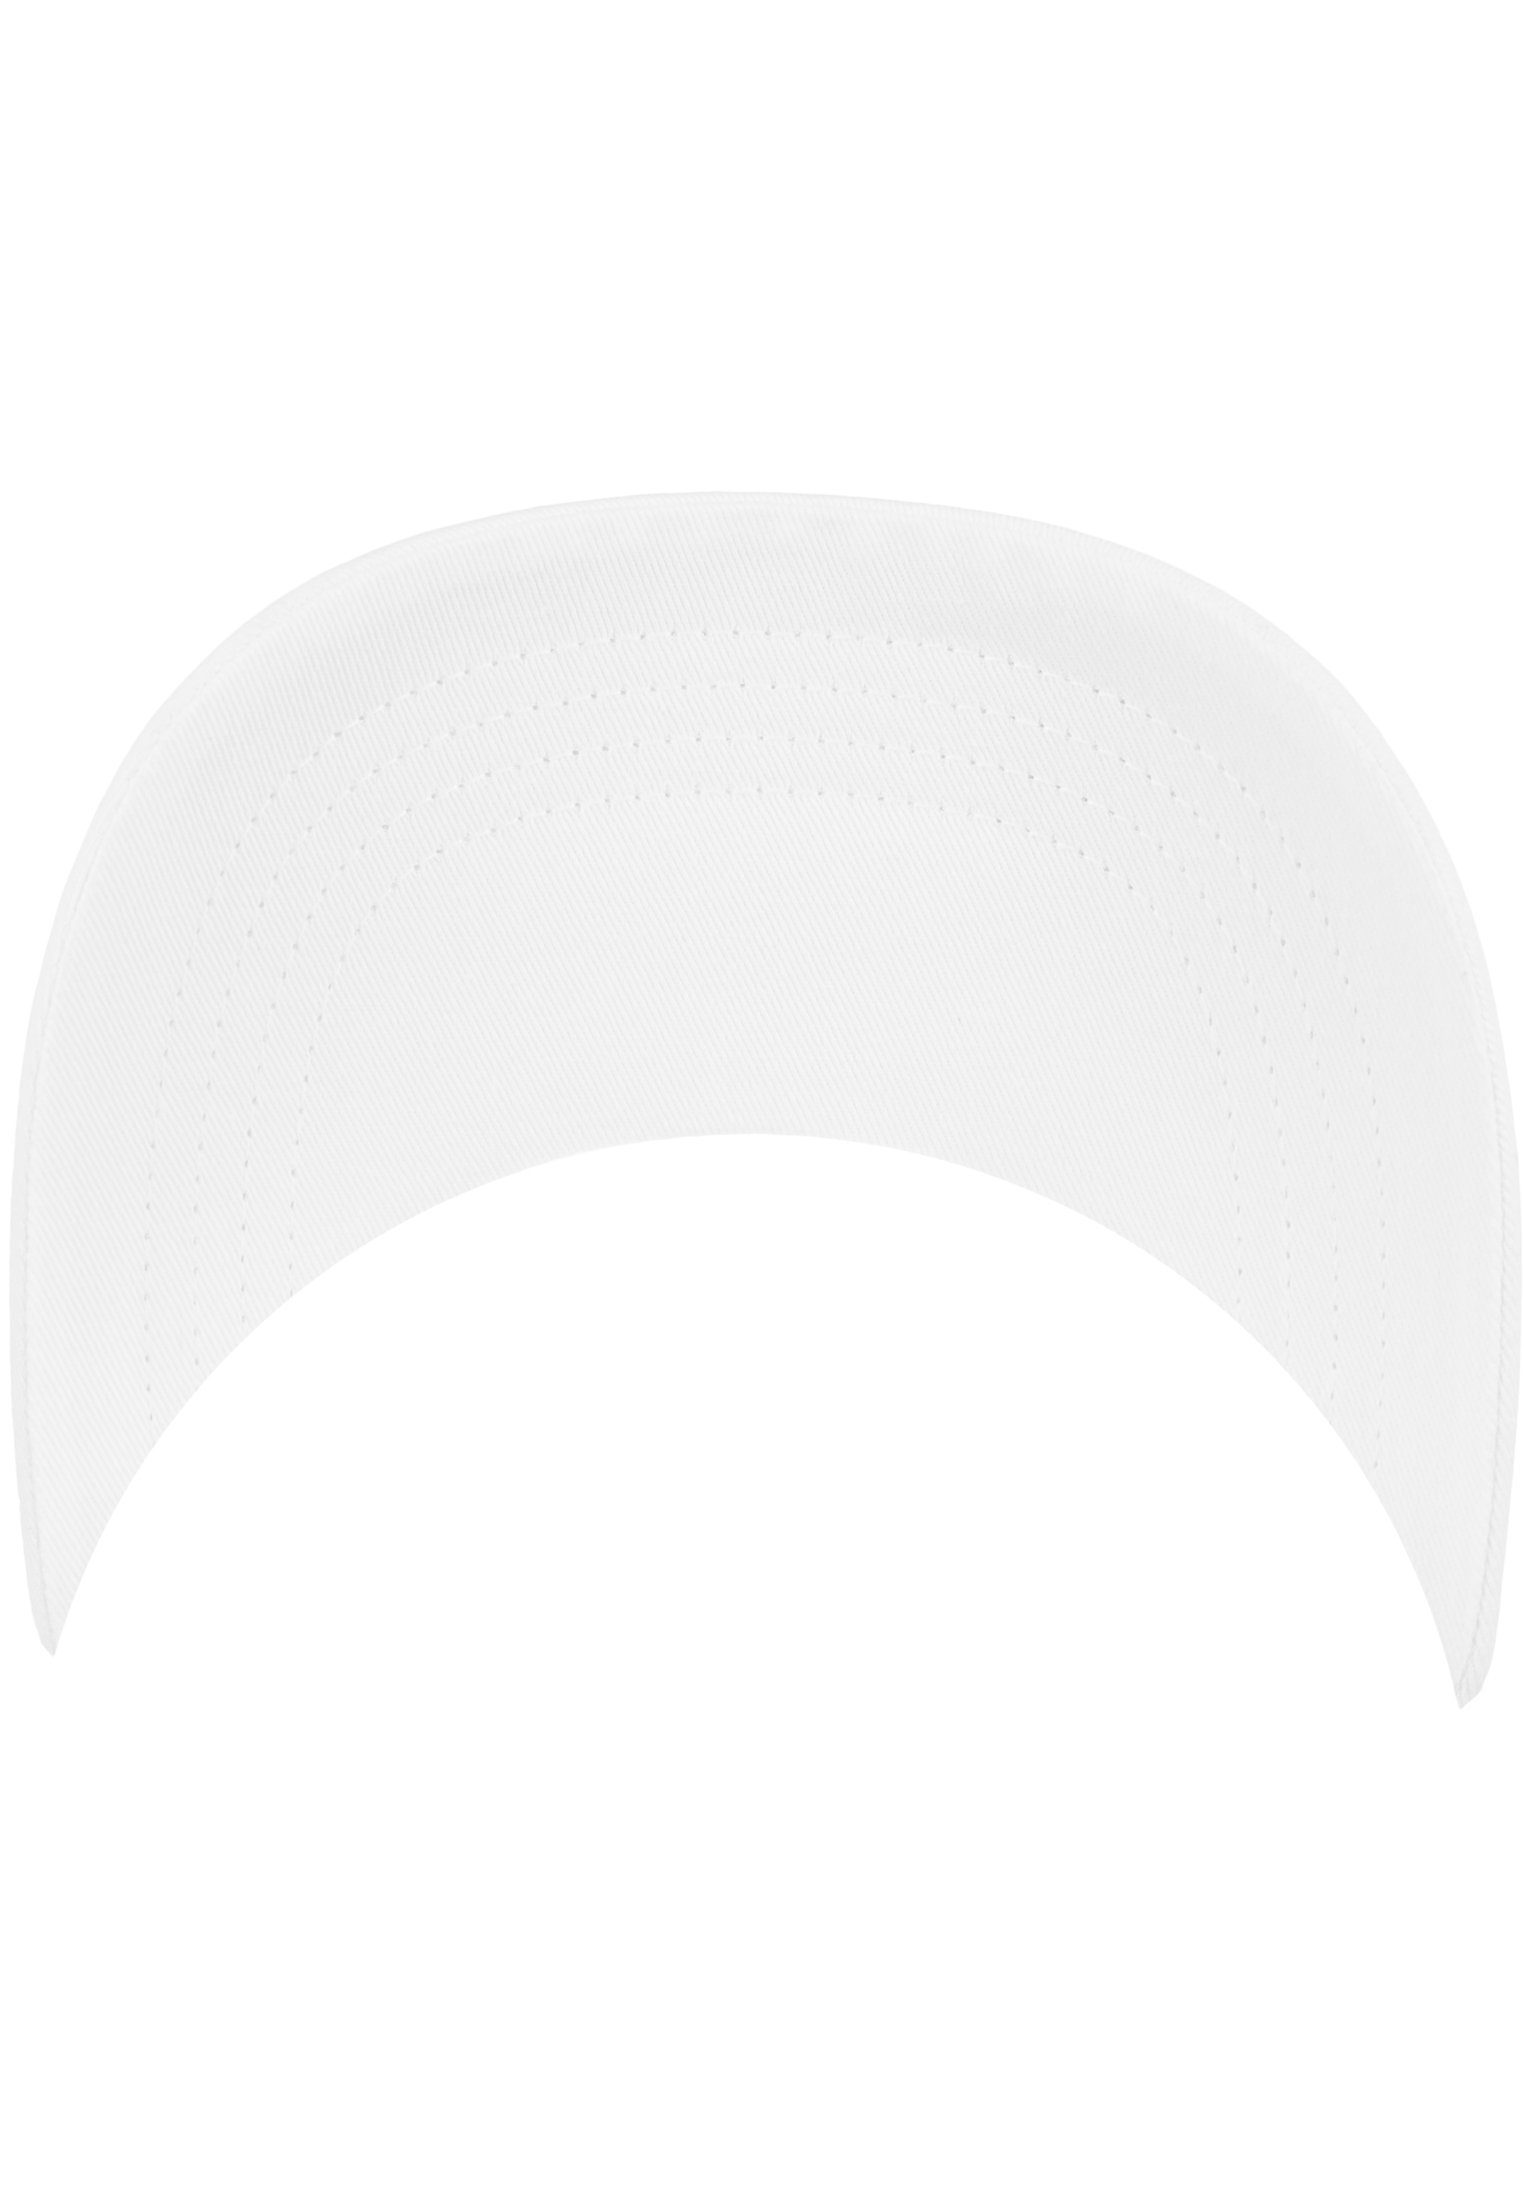 Flexfit Flex Cap Profile White Low Twill Flexfit Cotton 6245CM